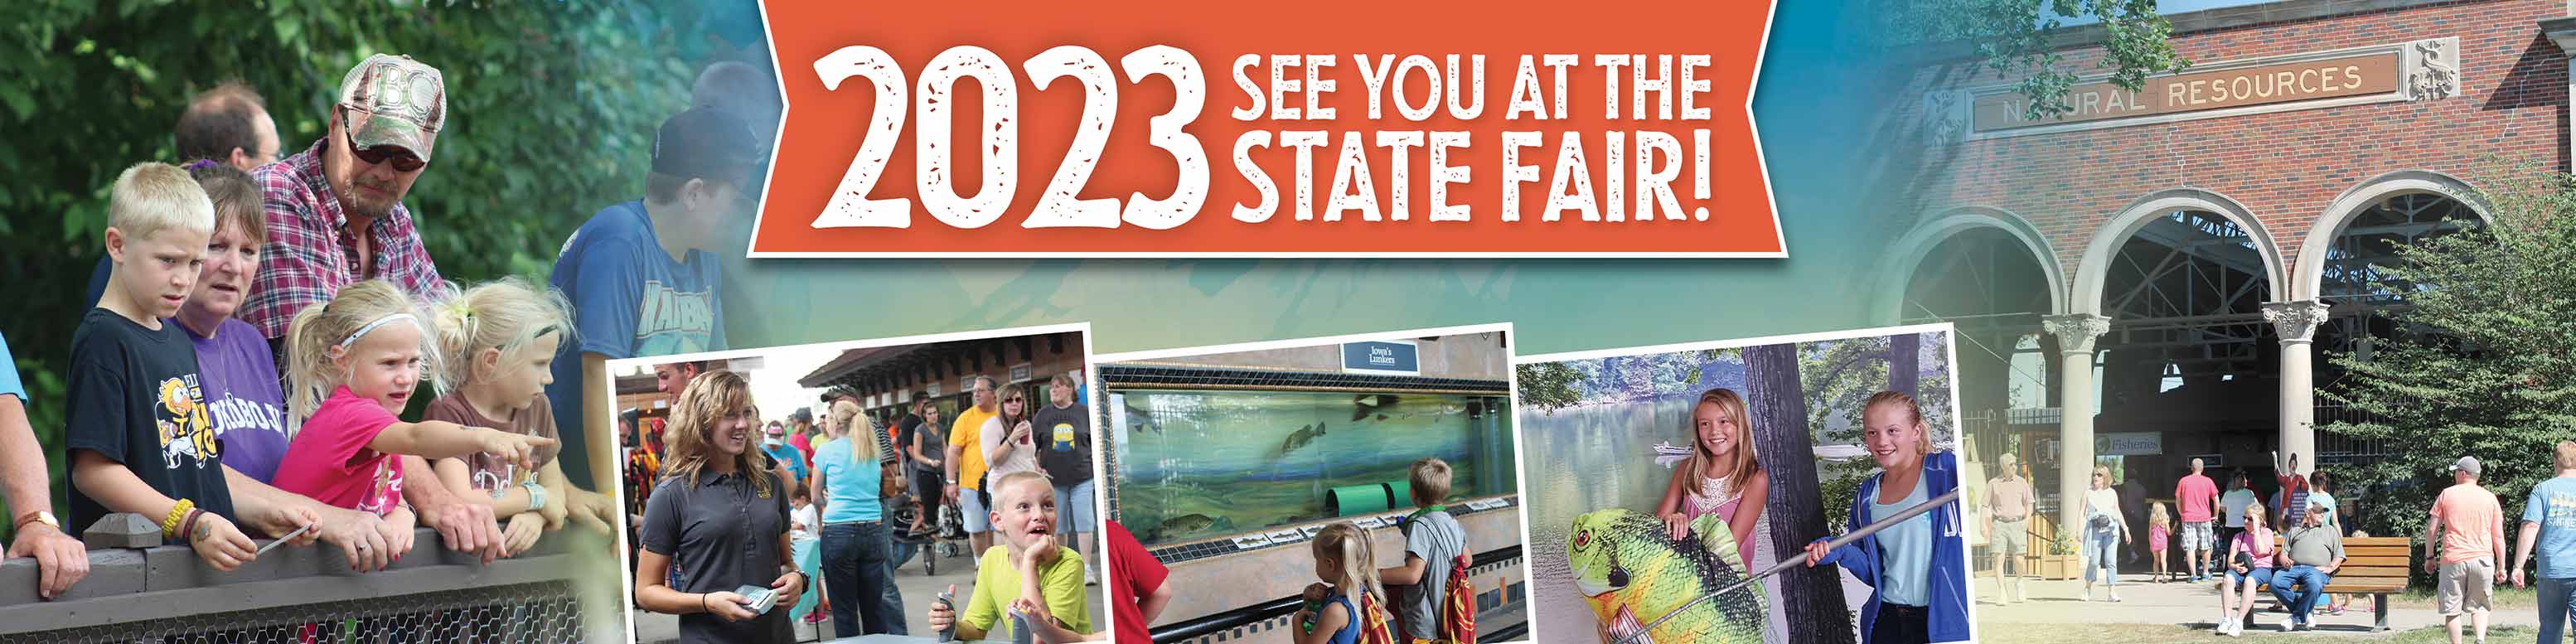 DNR 2023 state fair